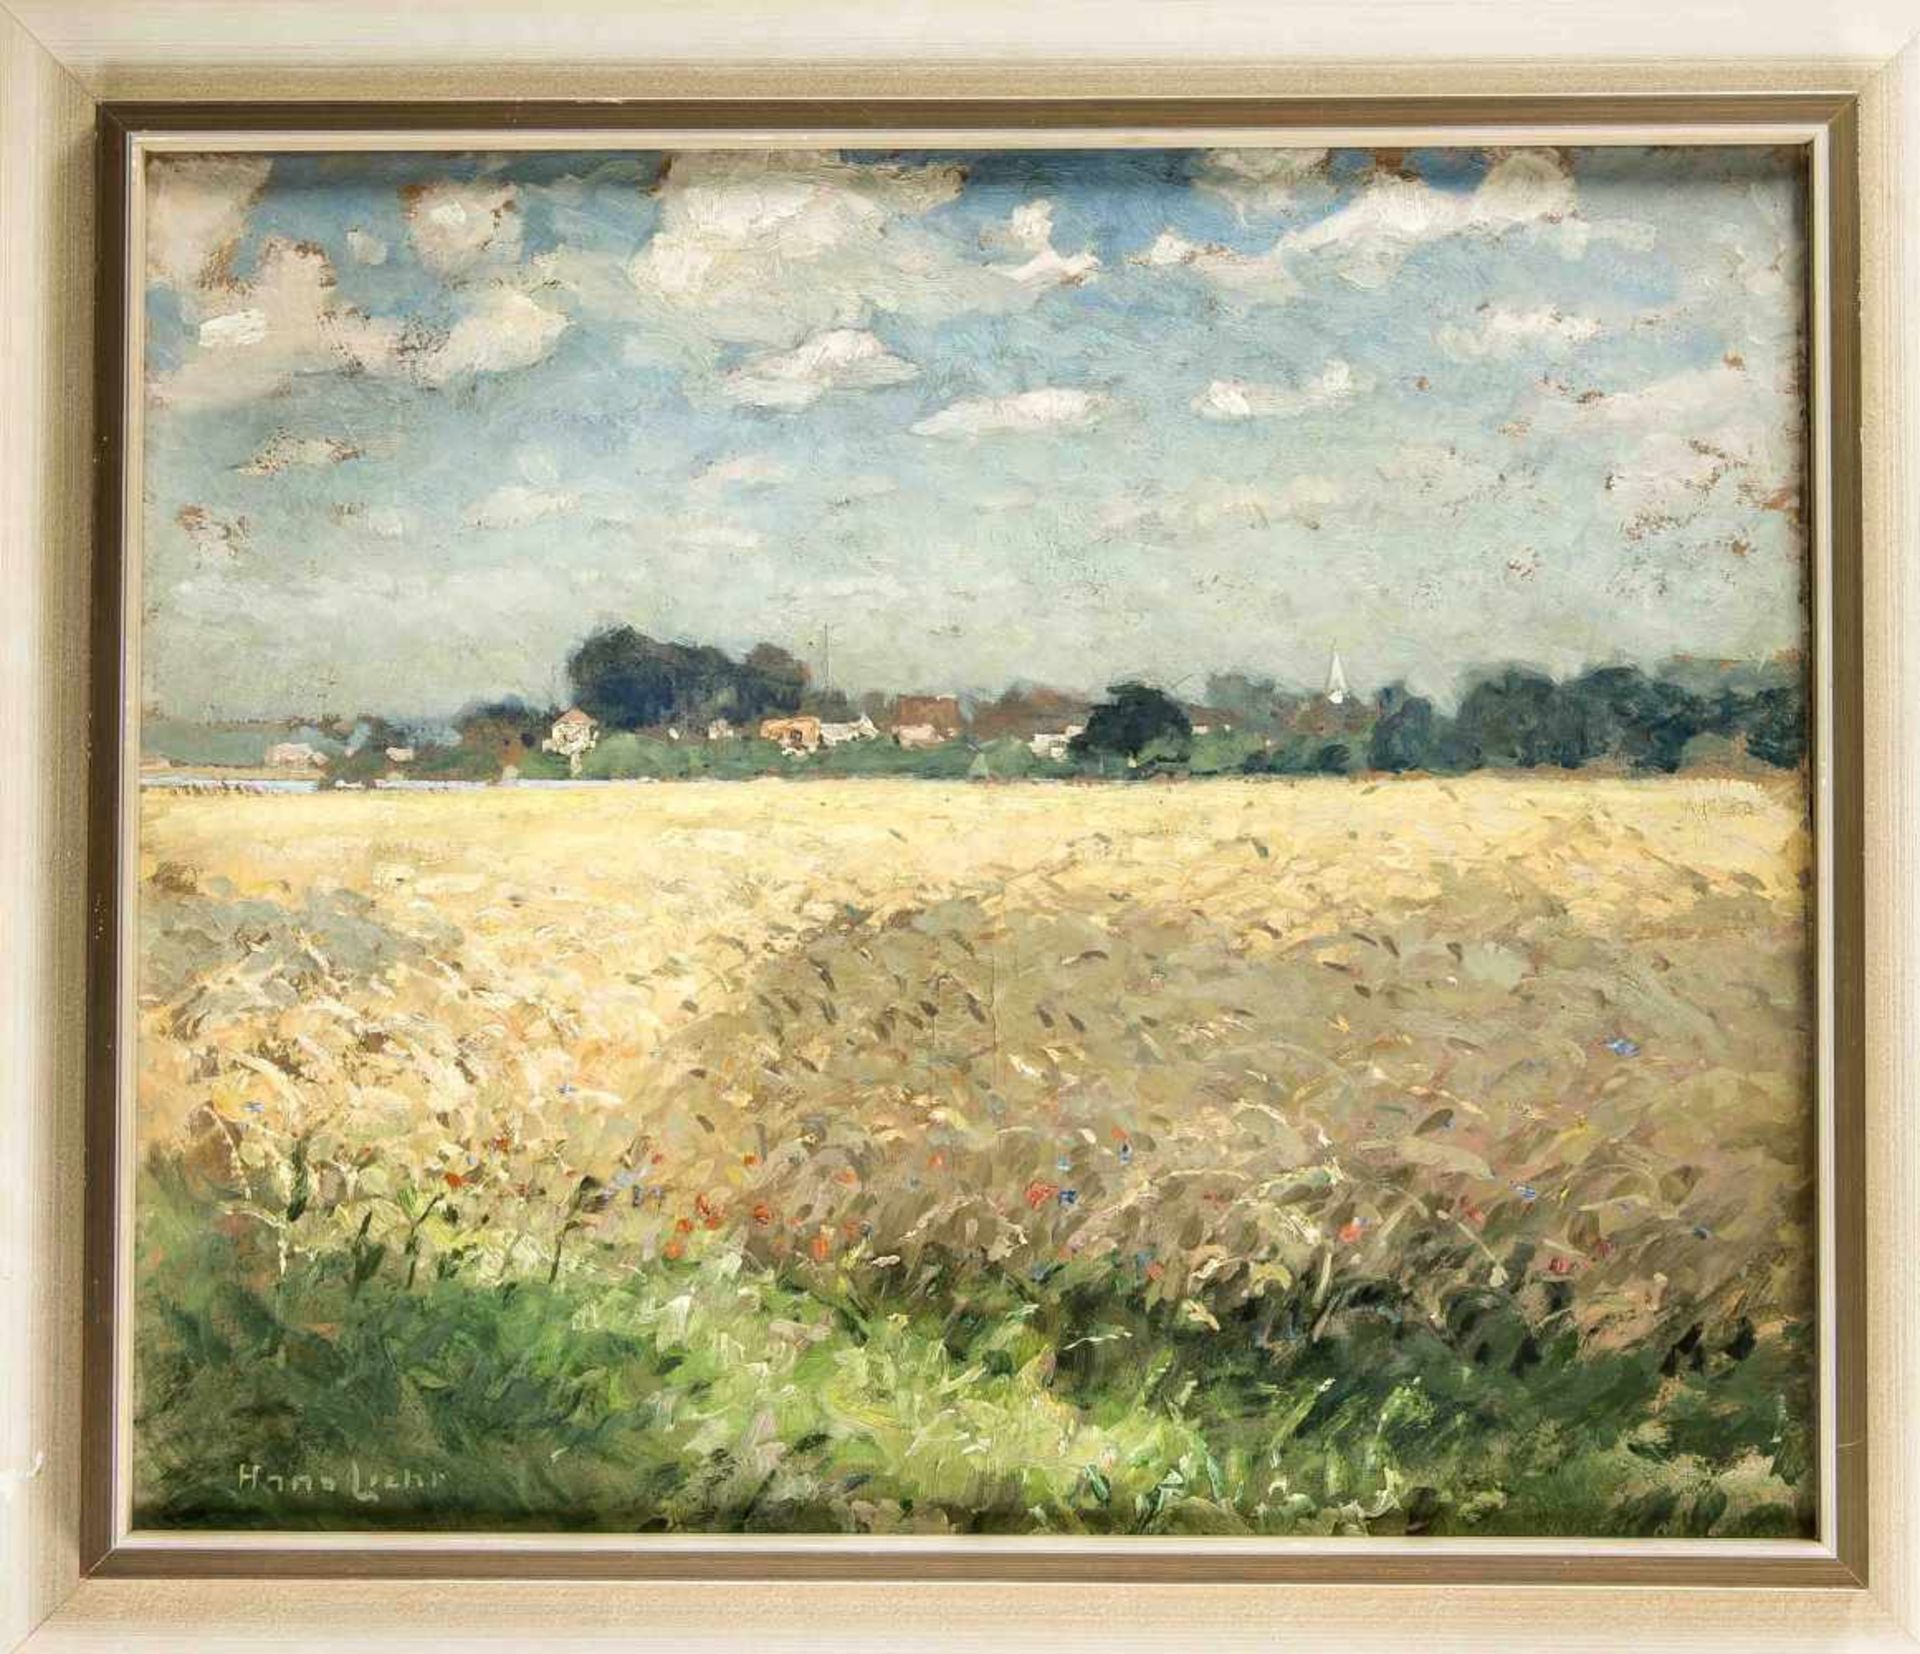 Hans Licht (1876-1935), Landschaftsmaler des dt. Impressionismus, studierte in Berlin bei Bracht und